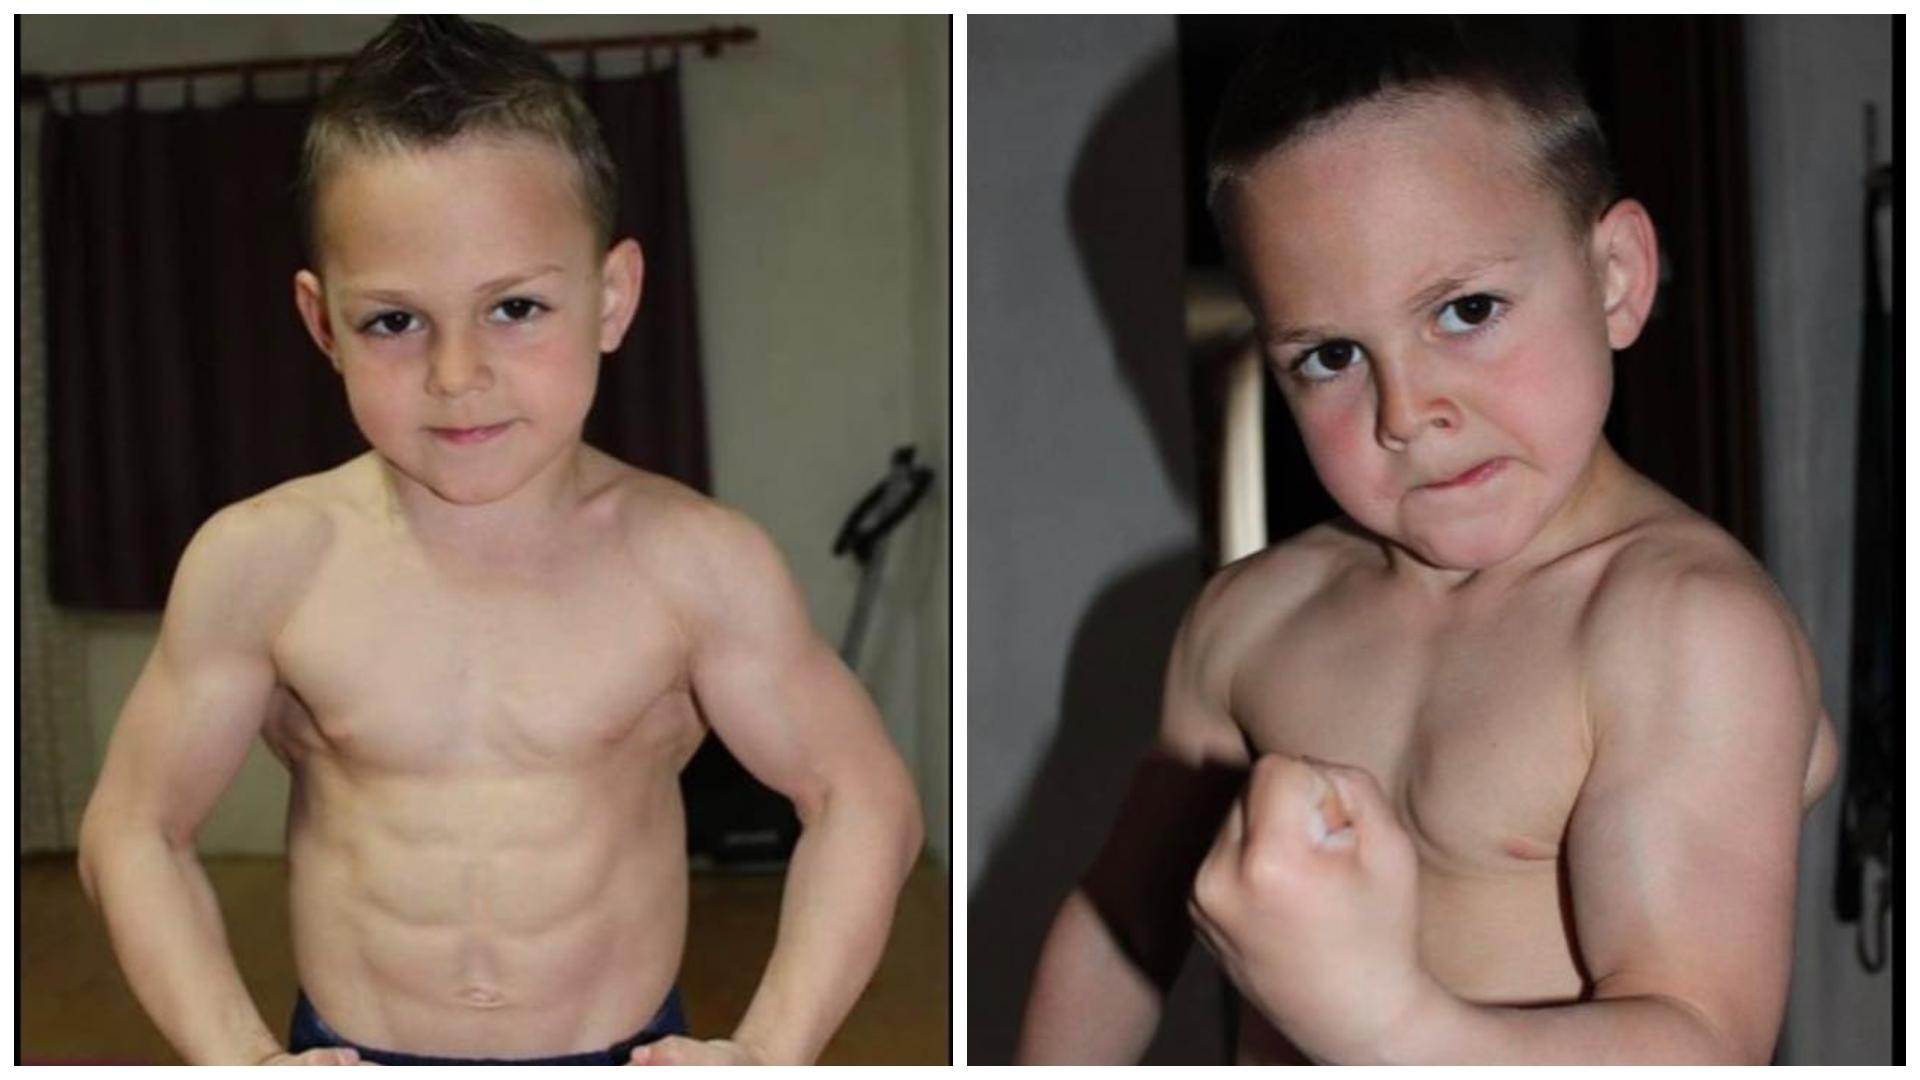 Cum arată acum micuțul „Hercule”. Băiatul care impresiona o țară întreagă în 2012 și-a arătat mușchii în mediul online